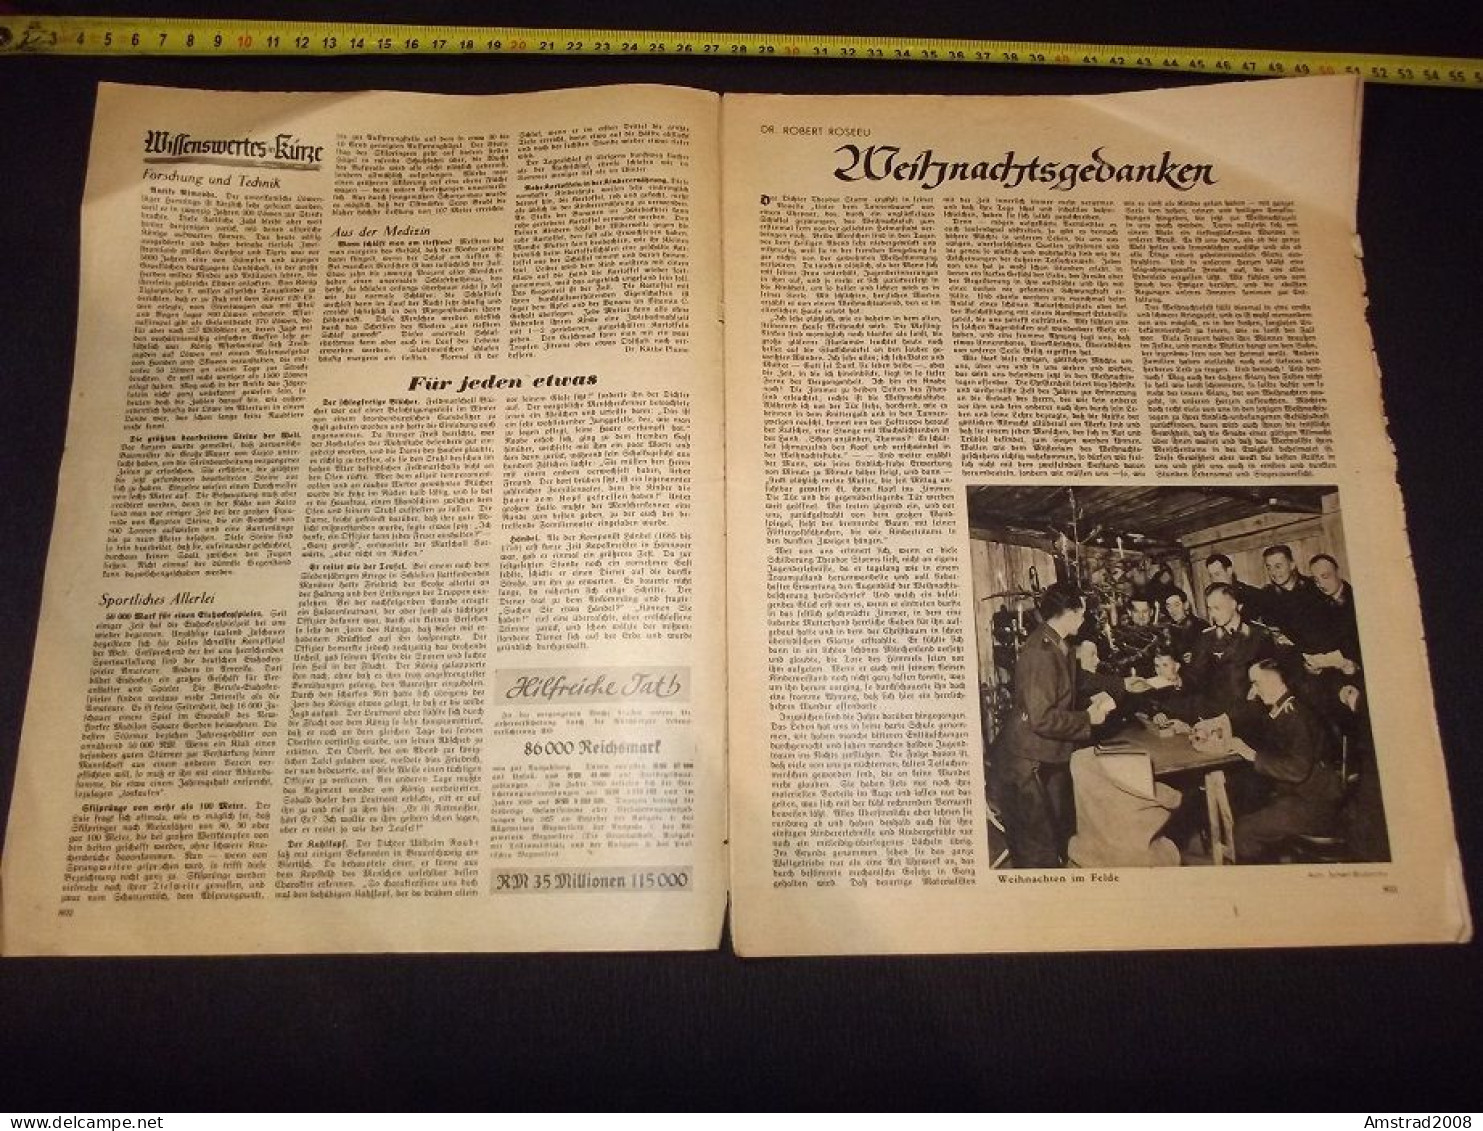 1940 - ALLGEMEINER WEGWEISER - FUR JEDE FAMILIE - GERMANY - GERMANIA THIRD REICH - ALLEMAGNE - DEUTSCHLAND - Hobby & Sammeln